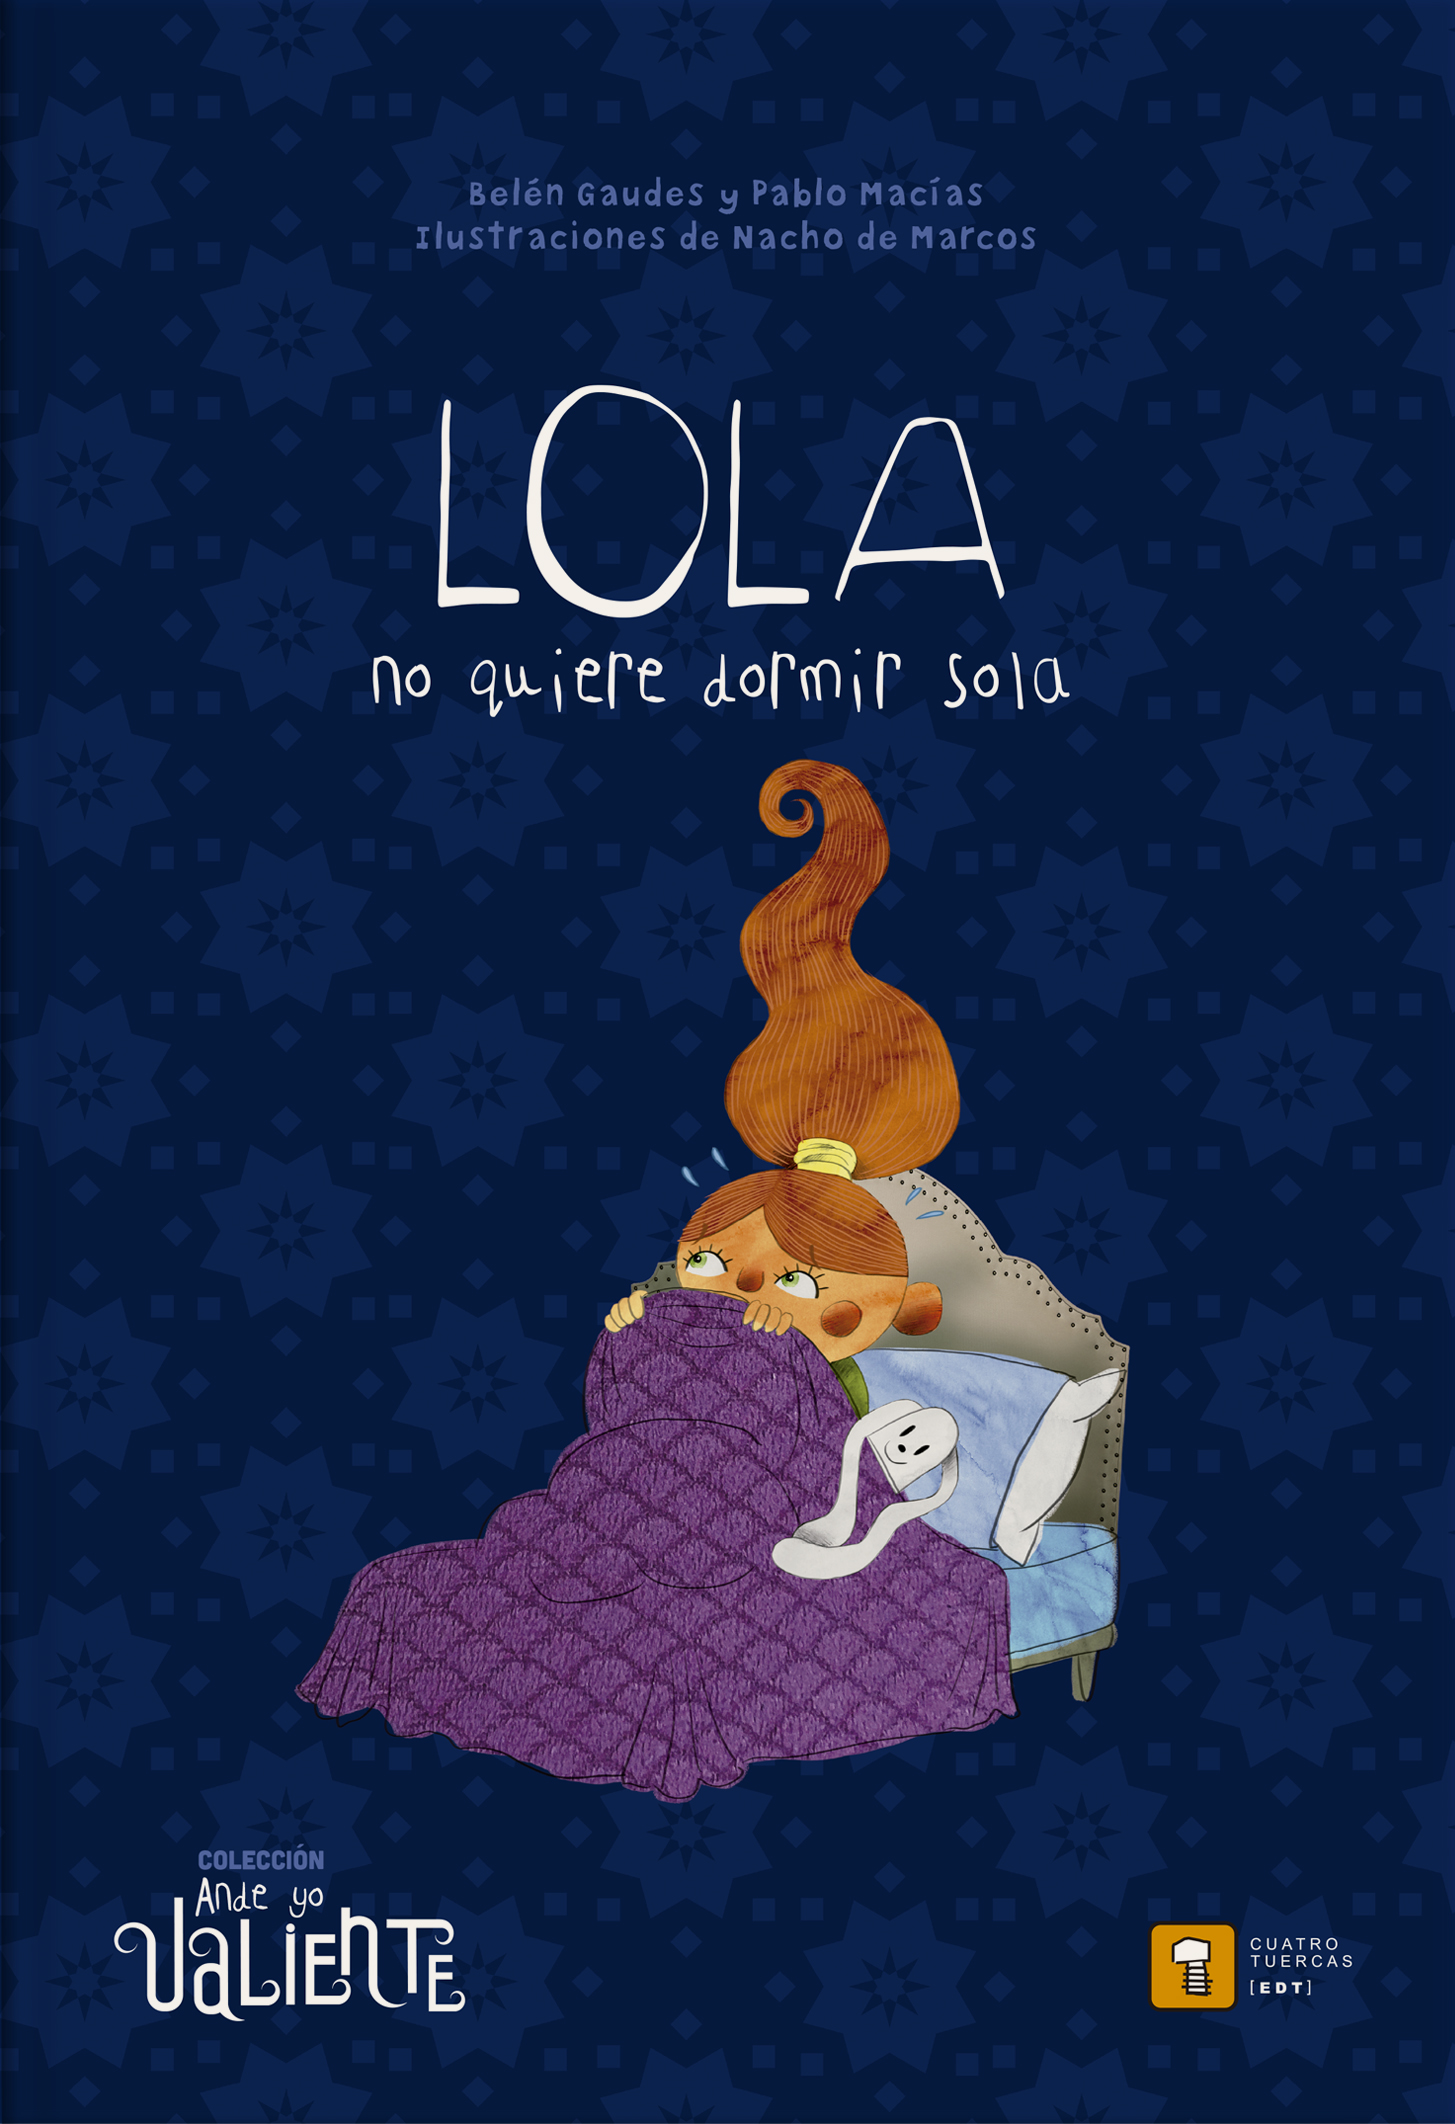 Lola no quiere dormir sola - Belén Gaudes | Pablo Macías | Nacho de Marcos